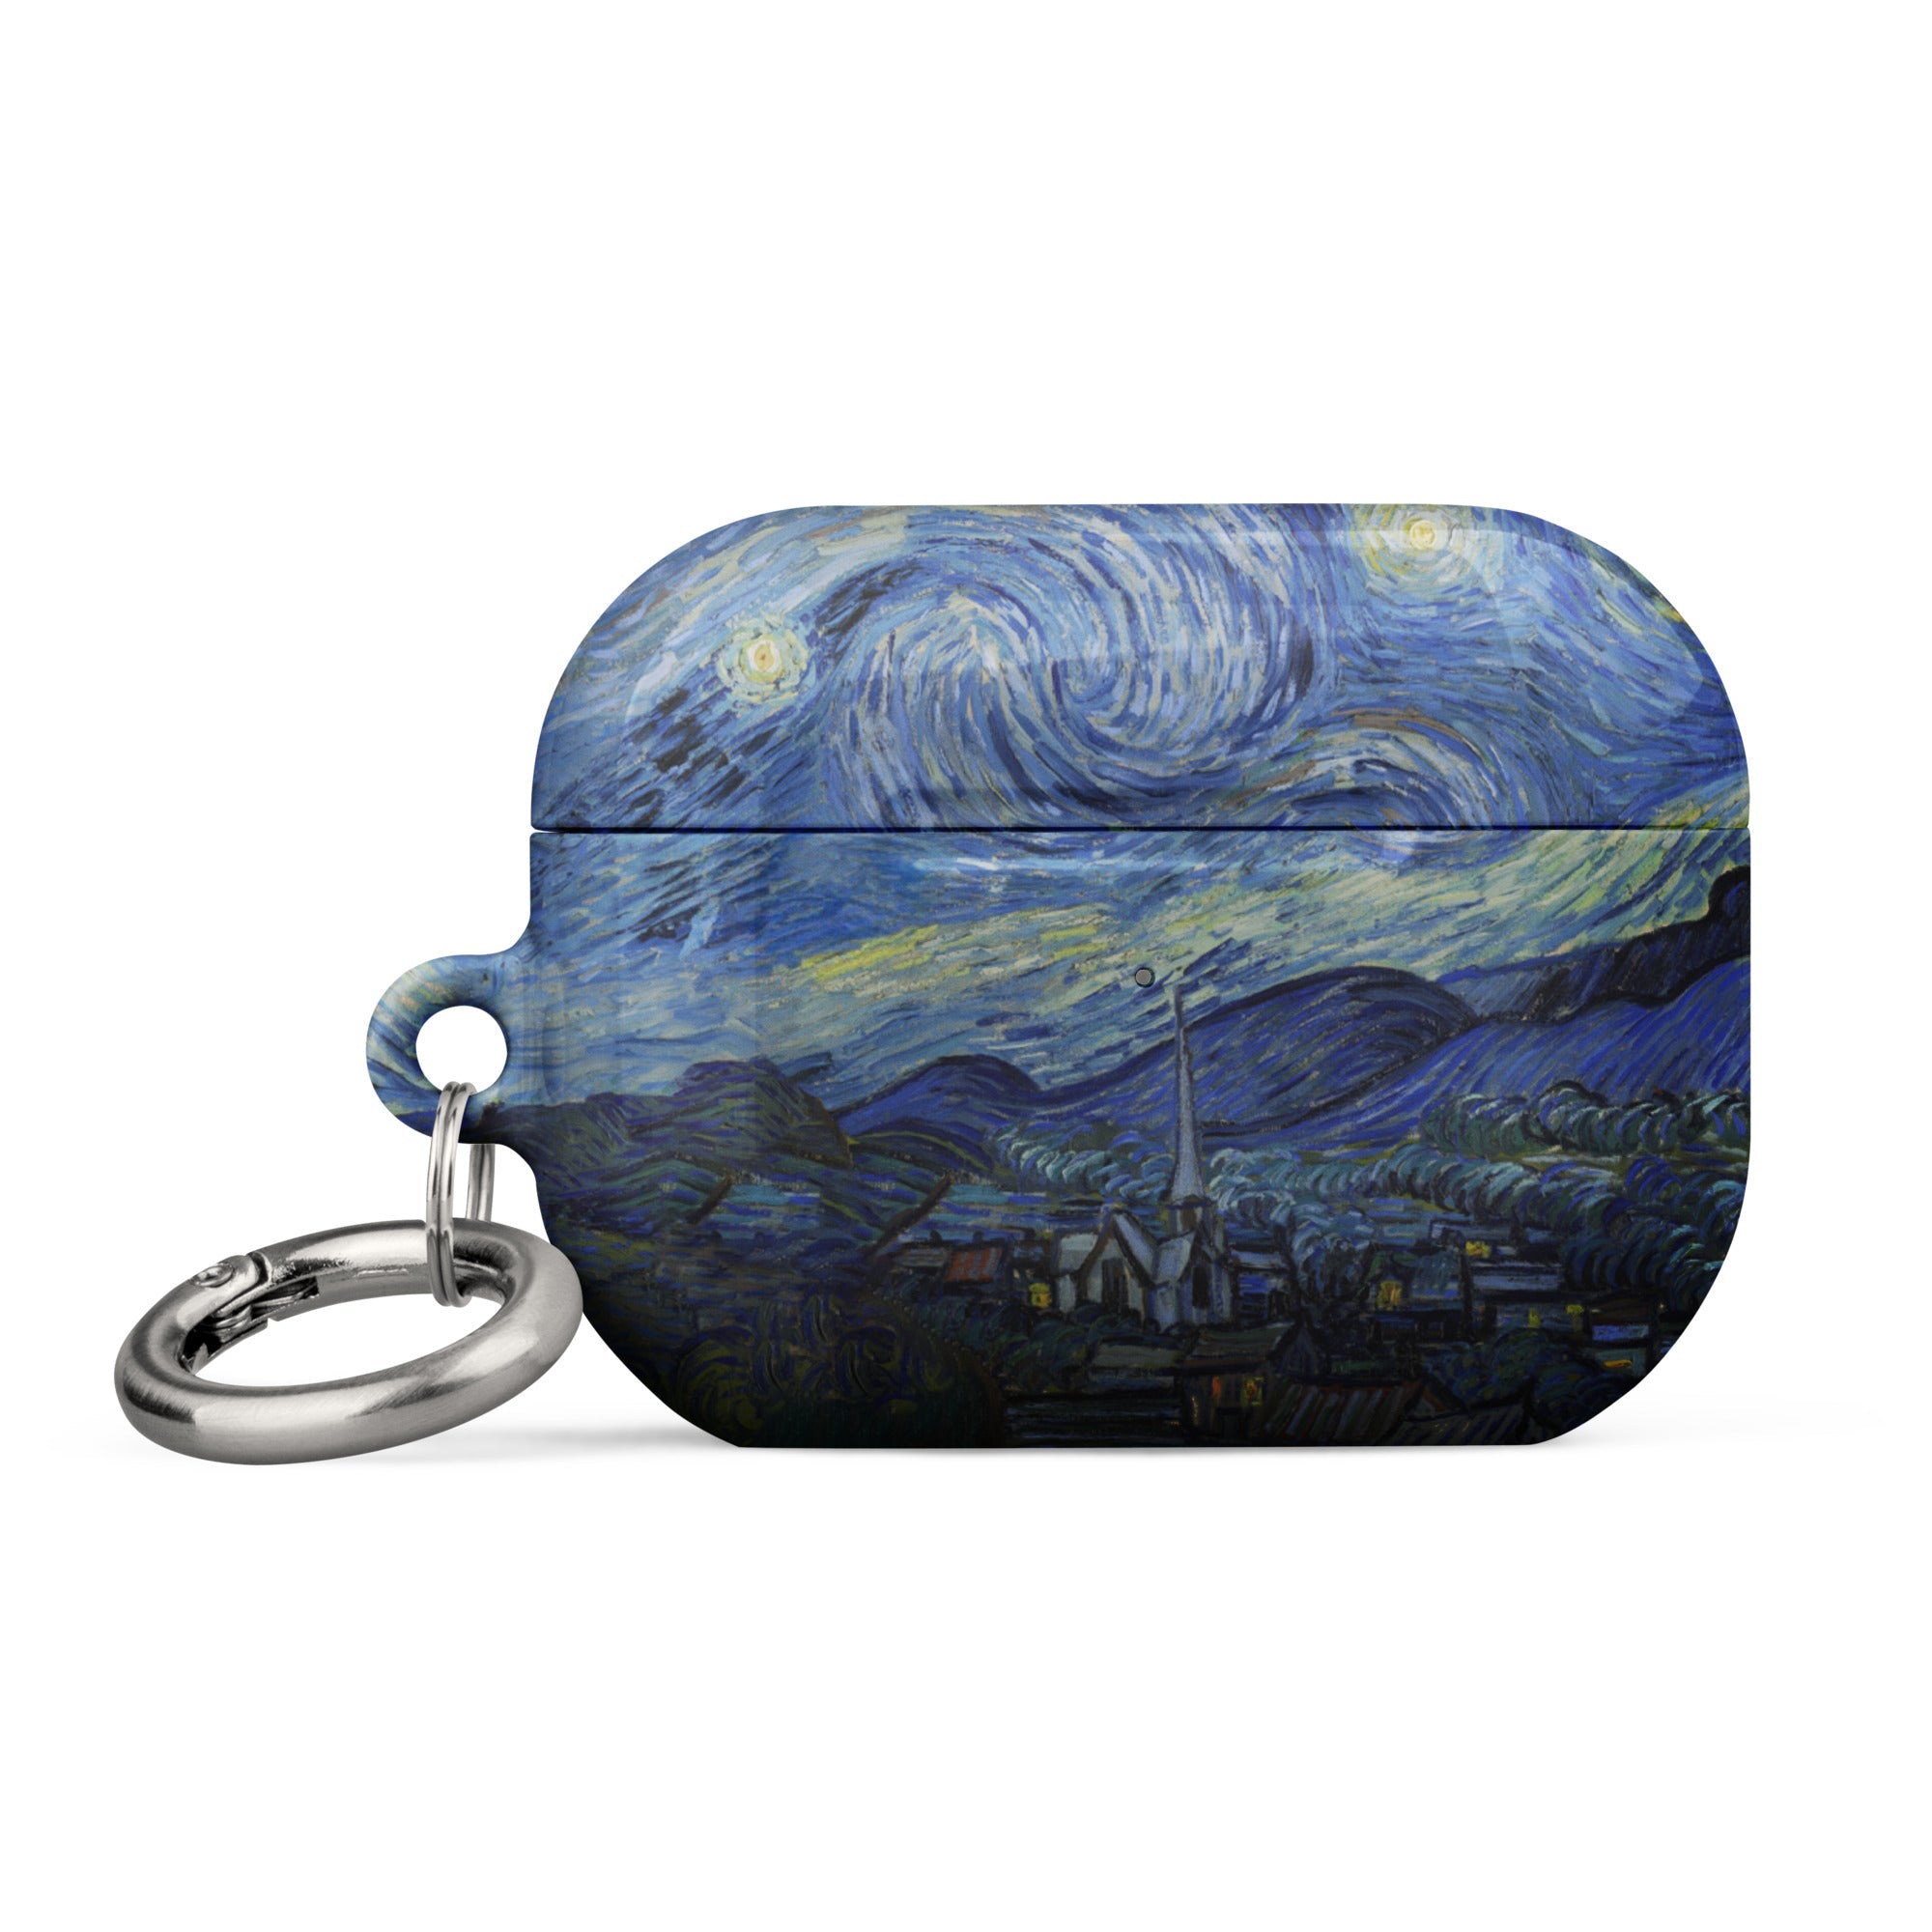 Vincent van Gogh „Sternennacht“, berühmtes Gemälde, AirPods®-Hülle | Premium-Kunsthülle für AirPods®